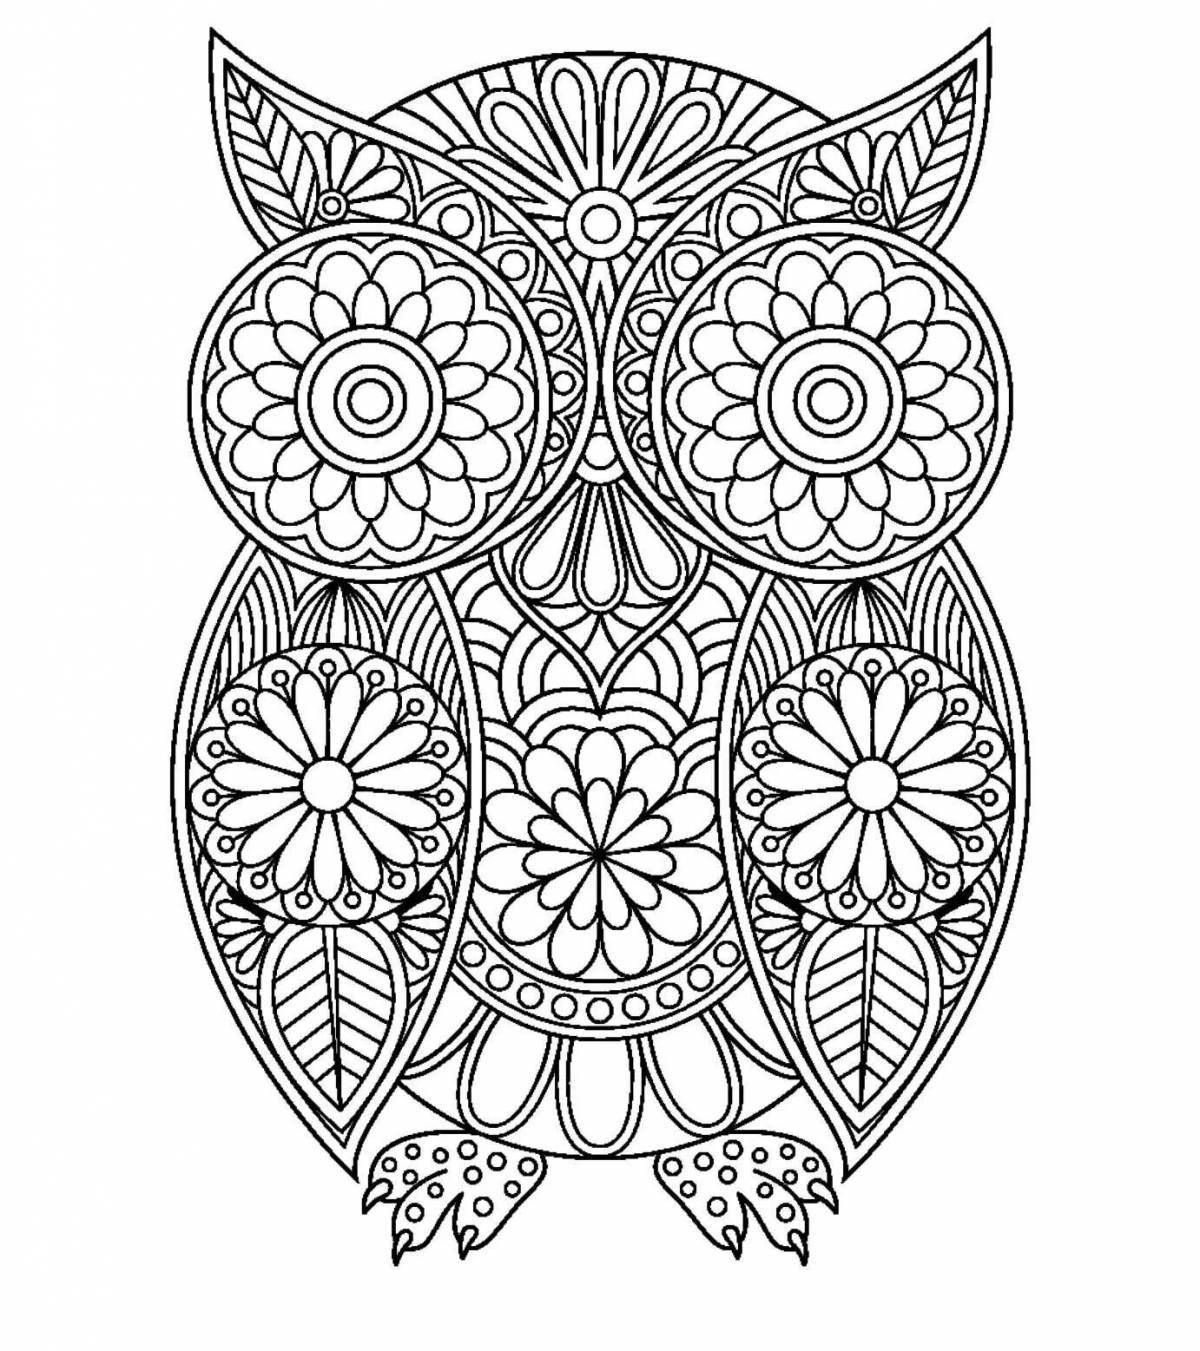 Exquisite complex owl coloring book